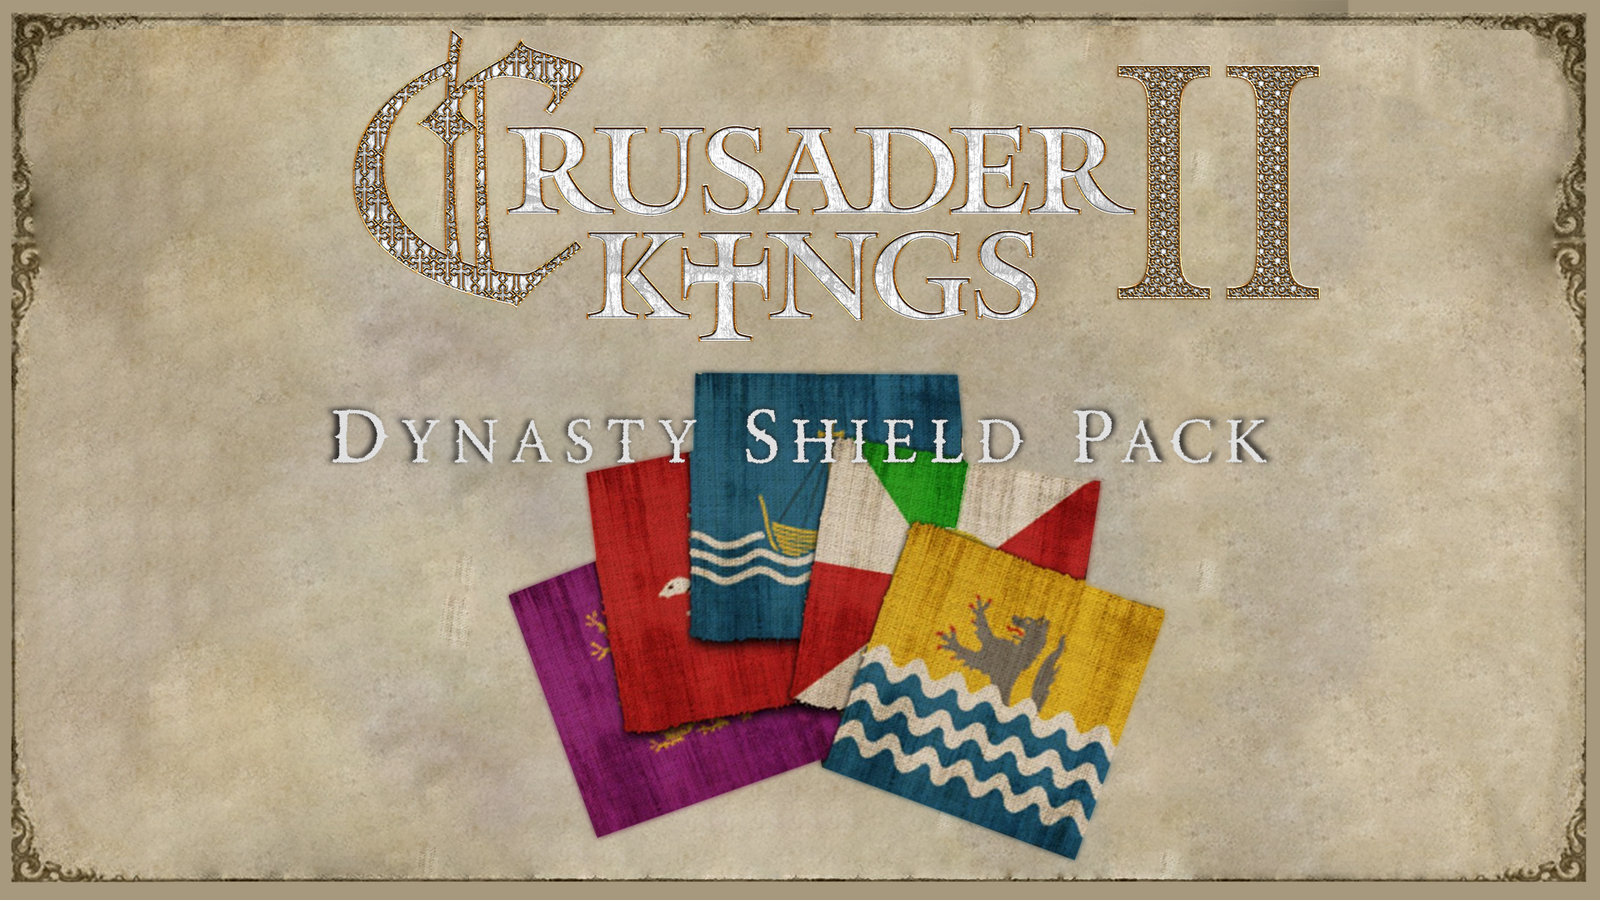 Crusader Kings II: Dynasty Shield Pack